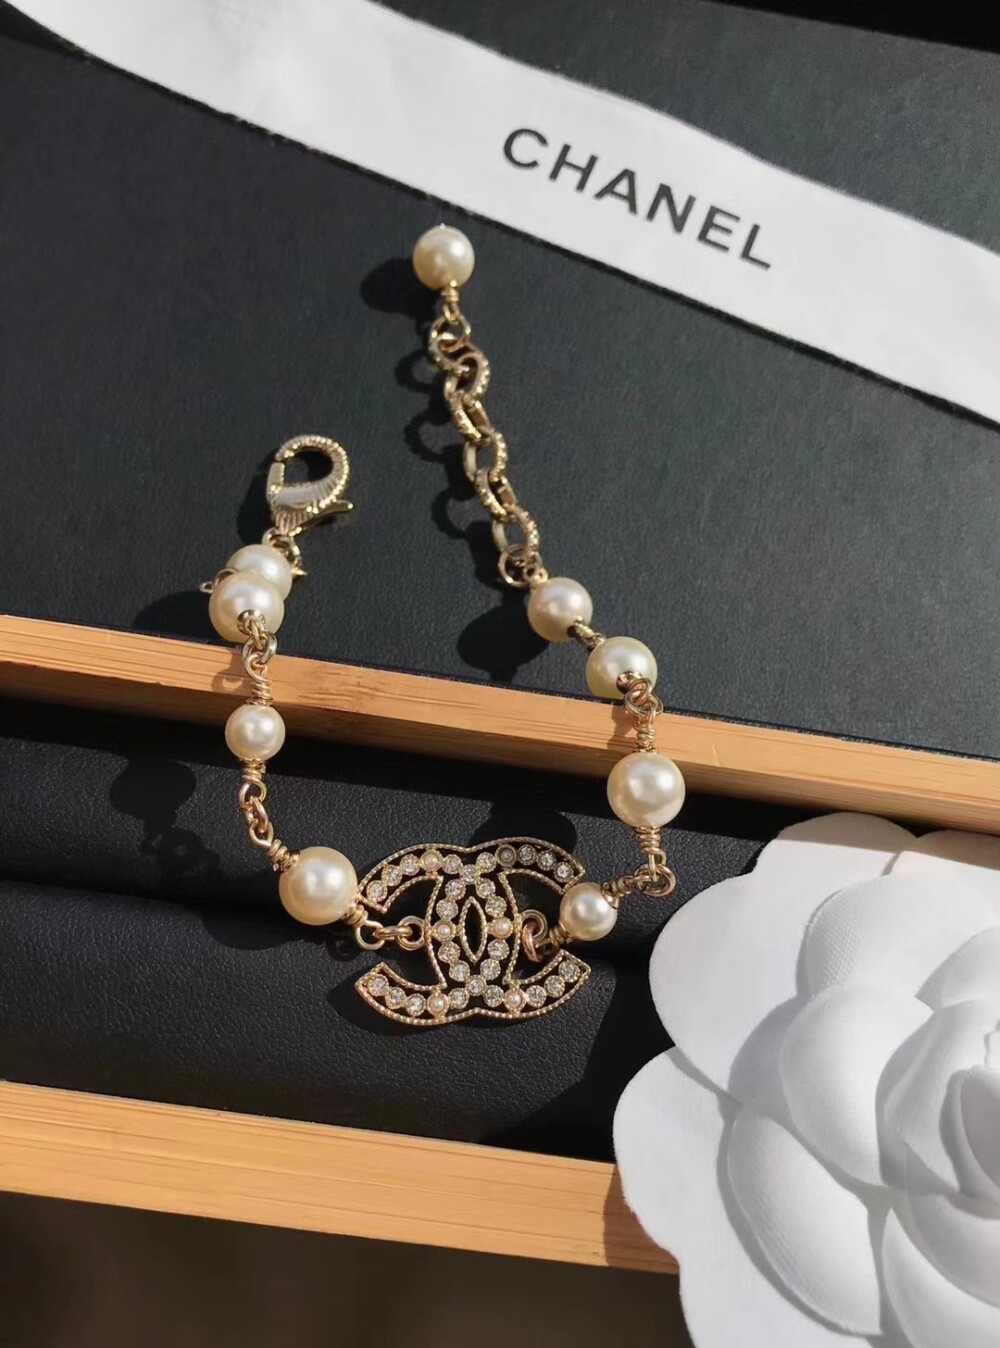 香奈儿镂空双c珍珠手链,超饱满珍珠色泽,自带复古时髦的单品,戴上它